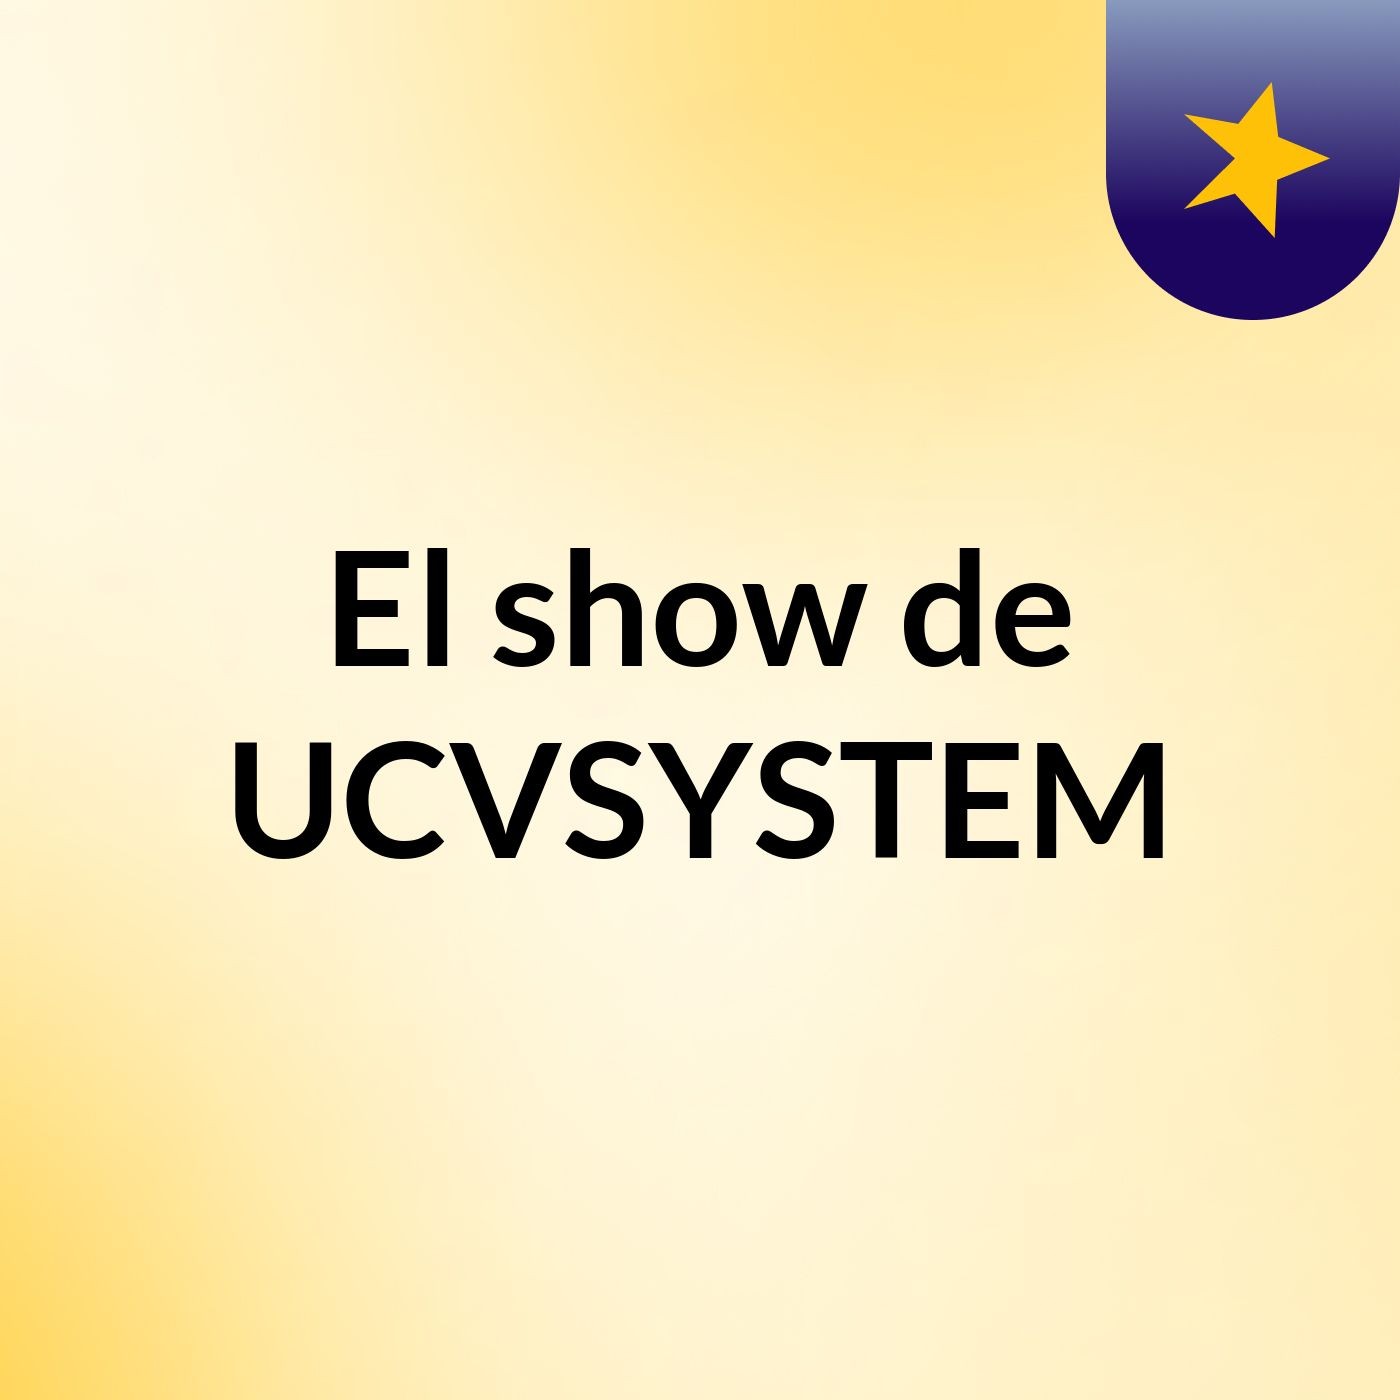 El show de UCVSYSTEM